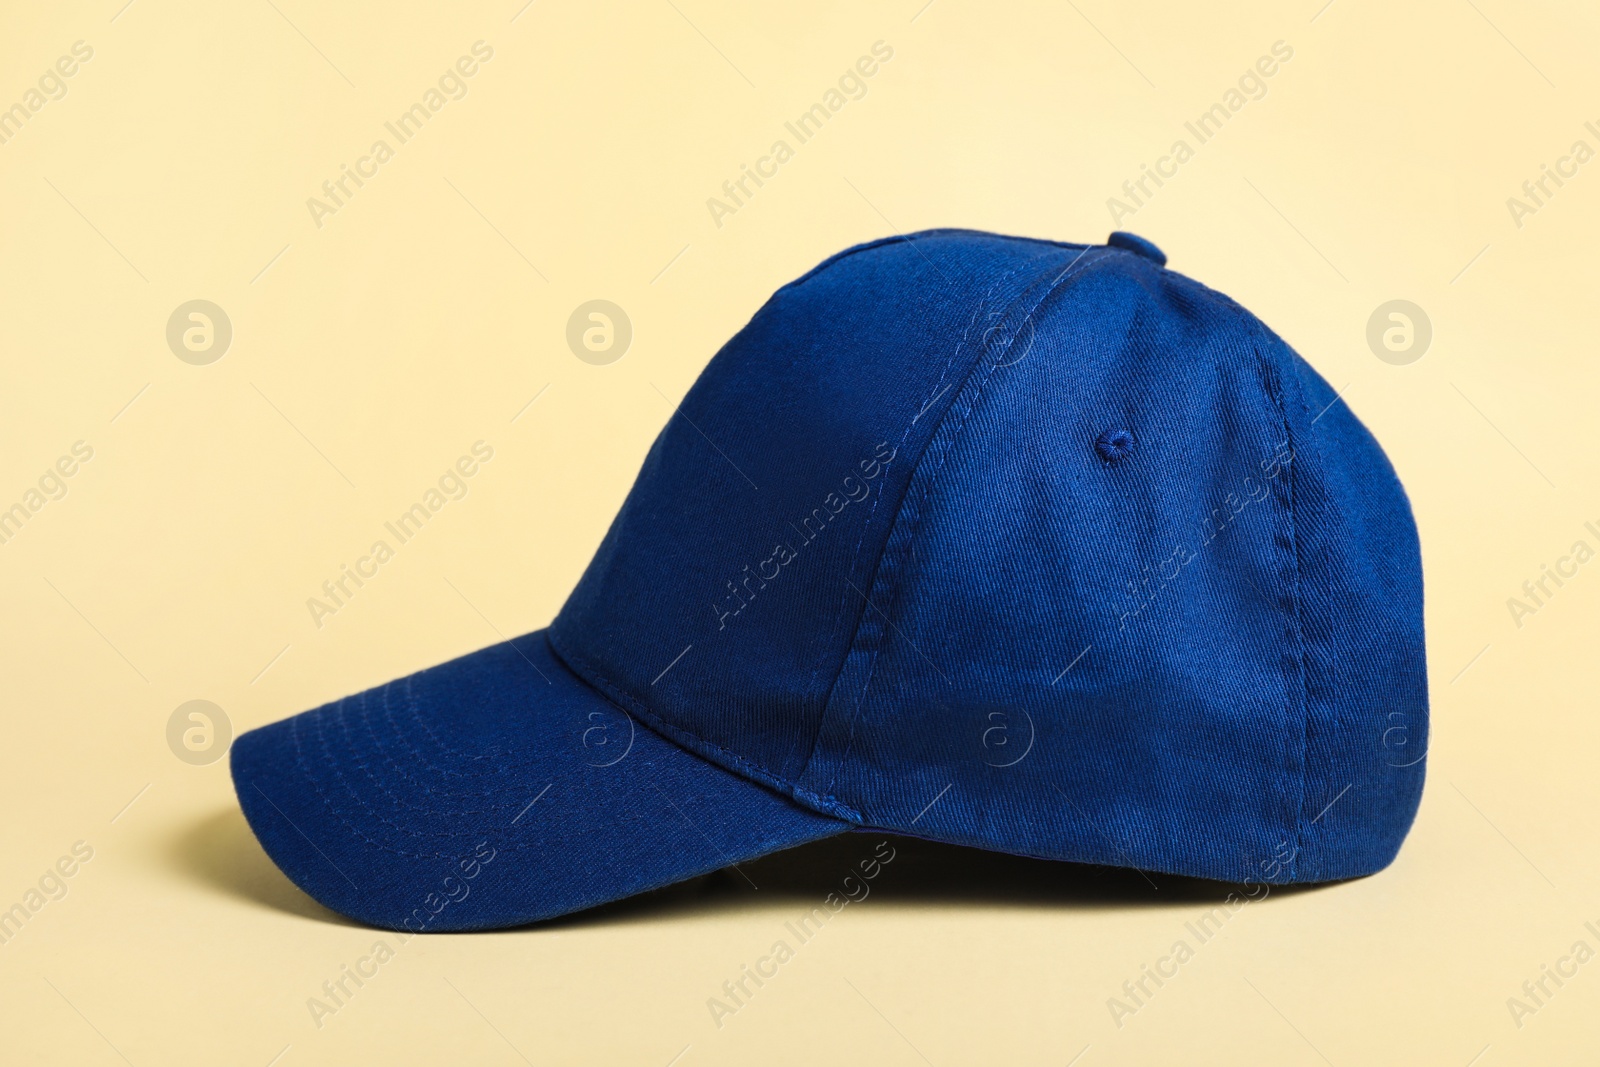 Photo of Stylish blue baseball cap on beige background